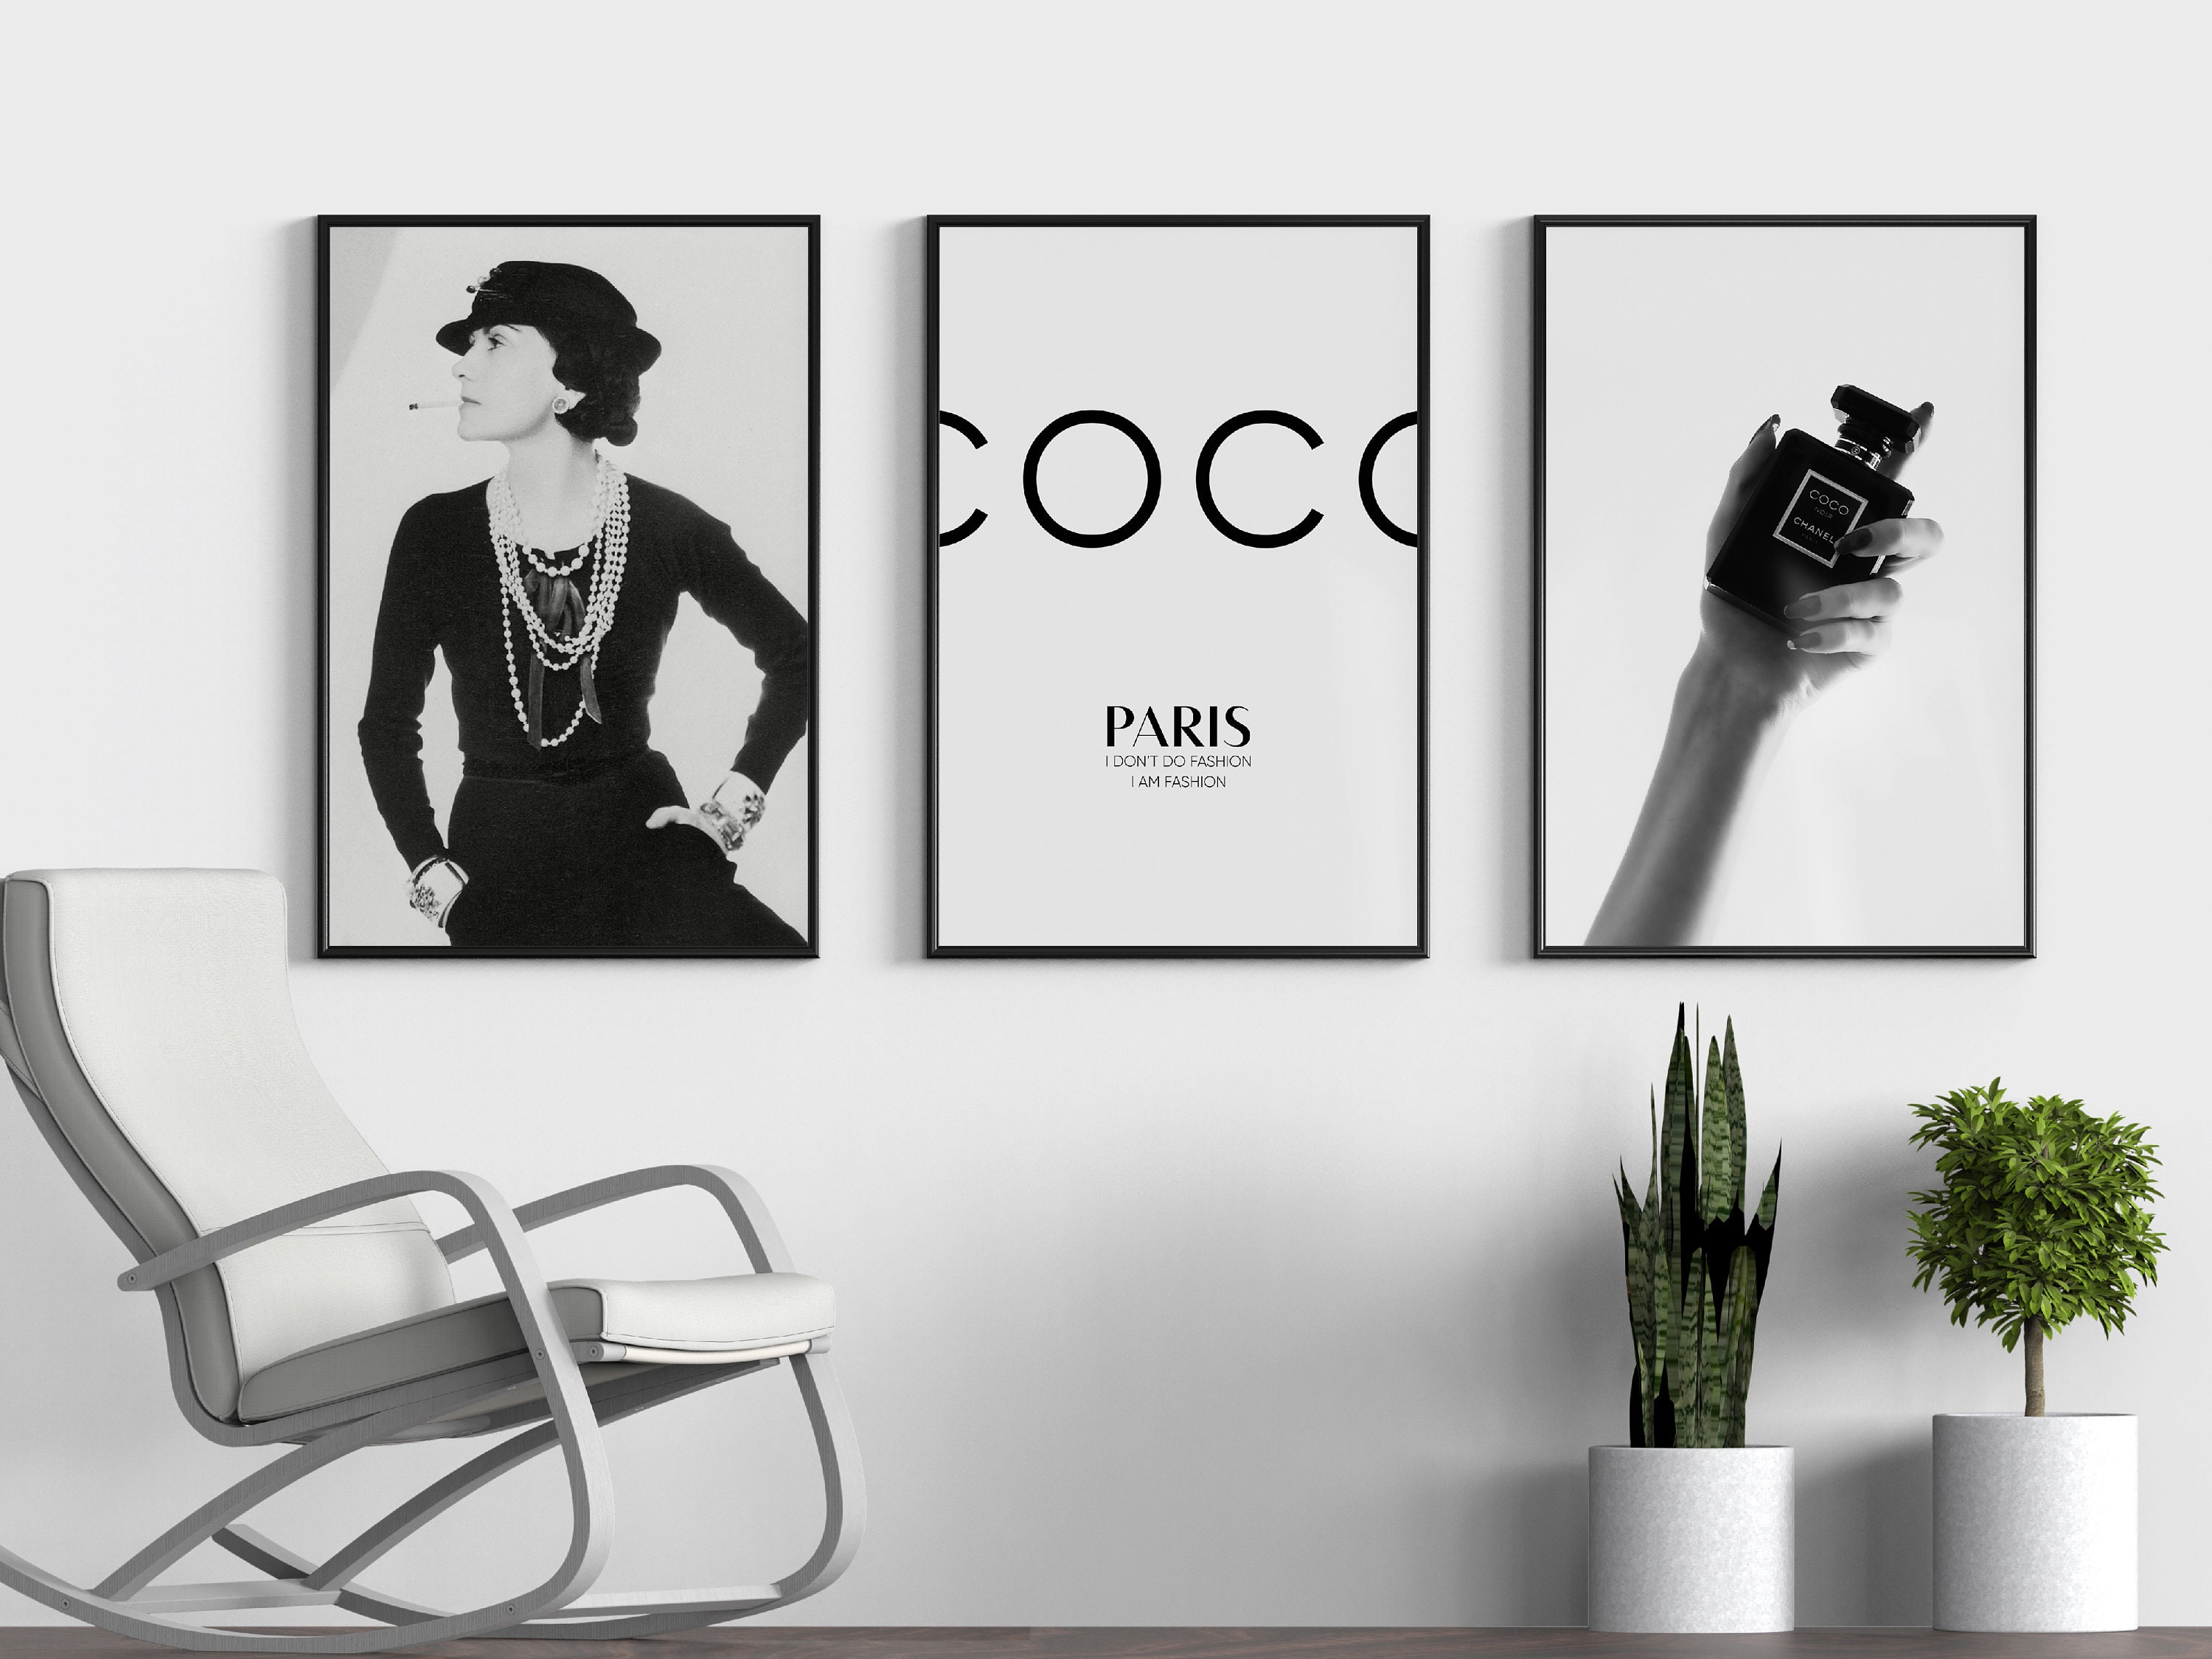 Louis-Vuitton-Bag-Pop-Art-Print - BIG Wall Décor